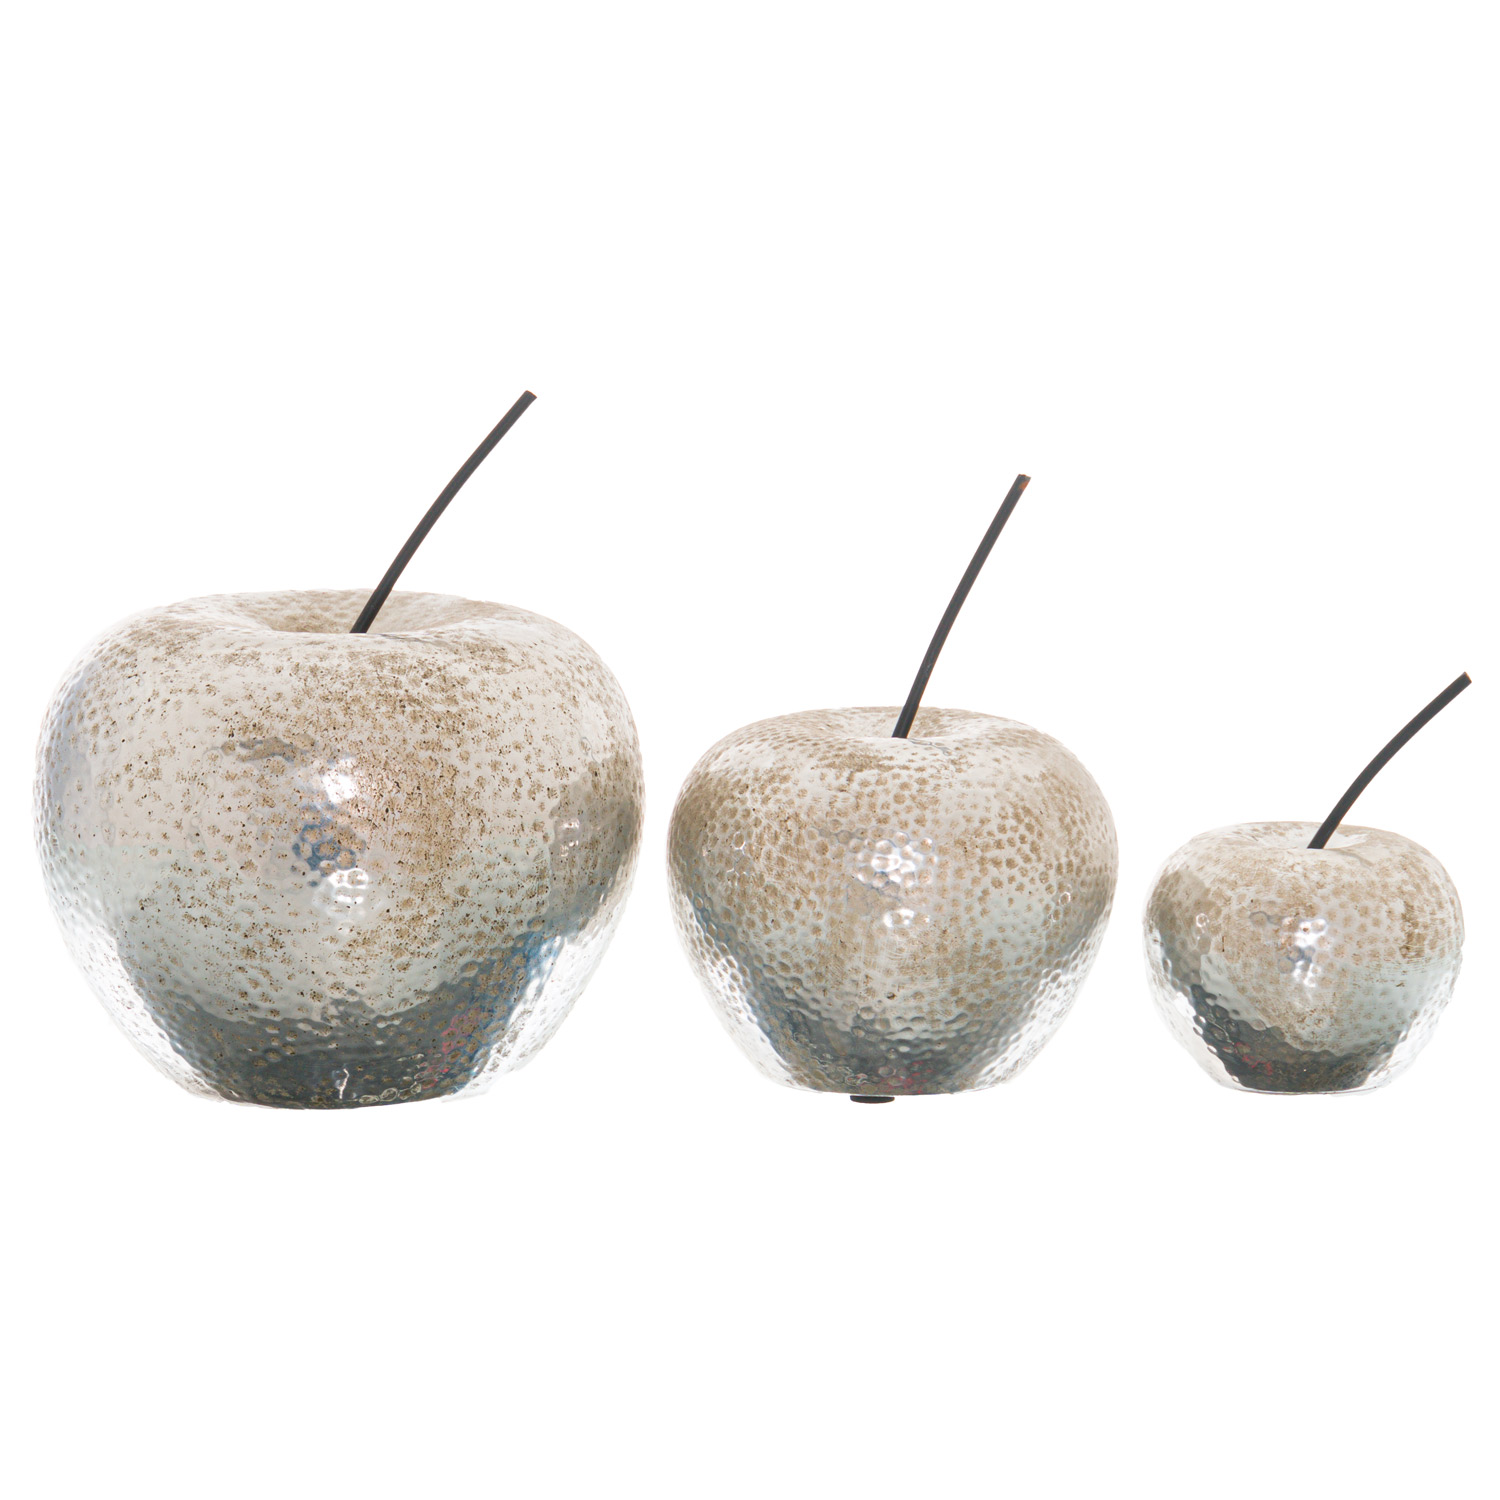 Small Silver Apple Ornament - Image 2